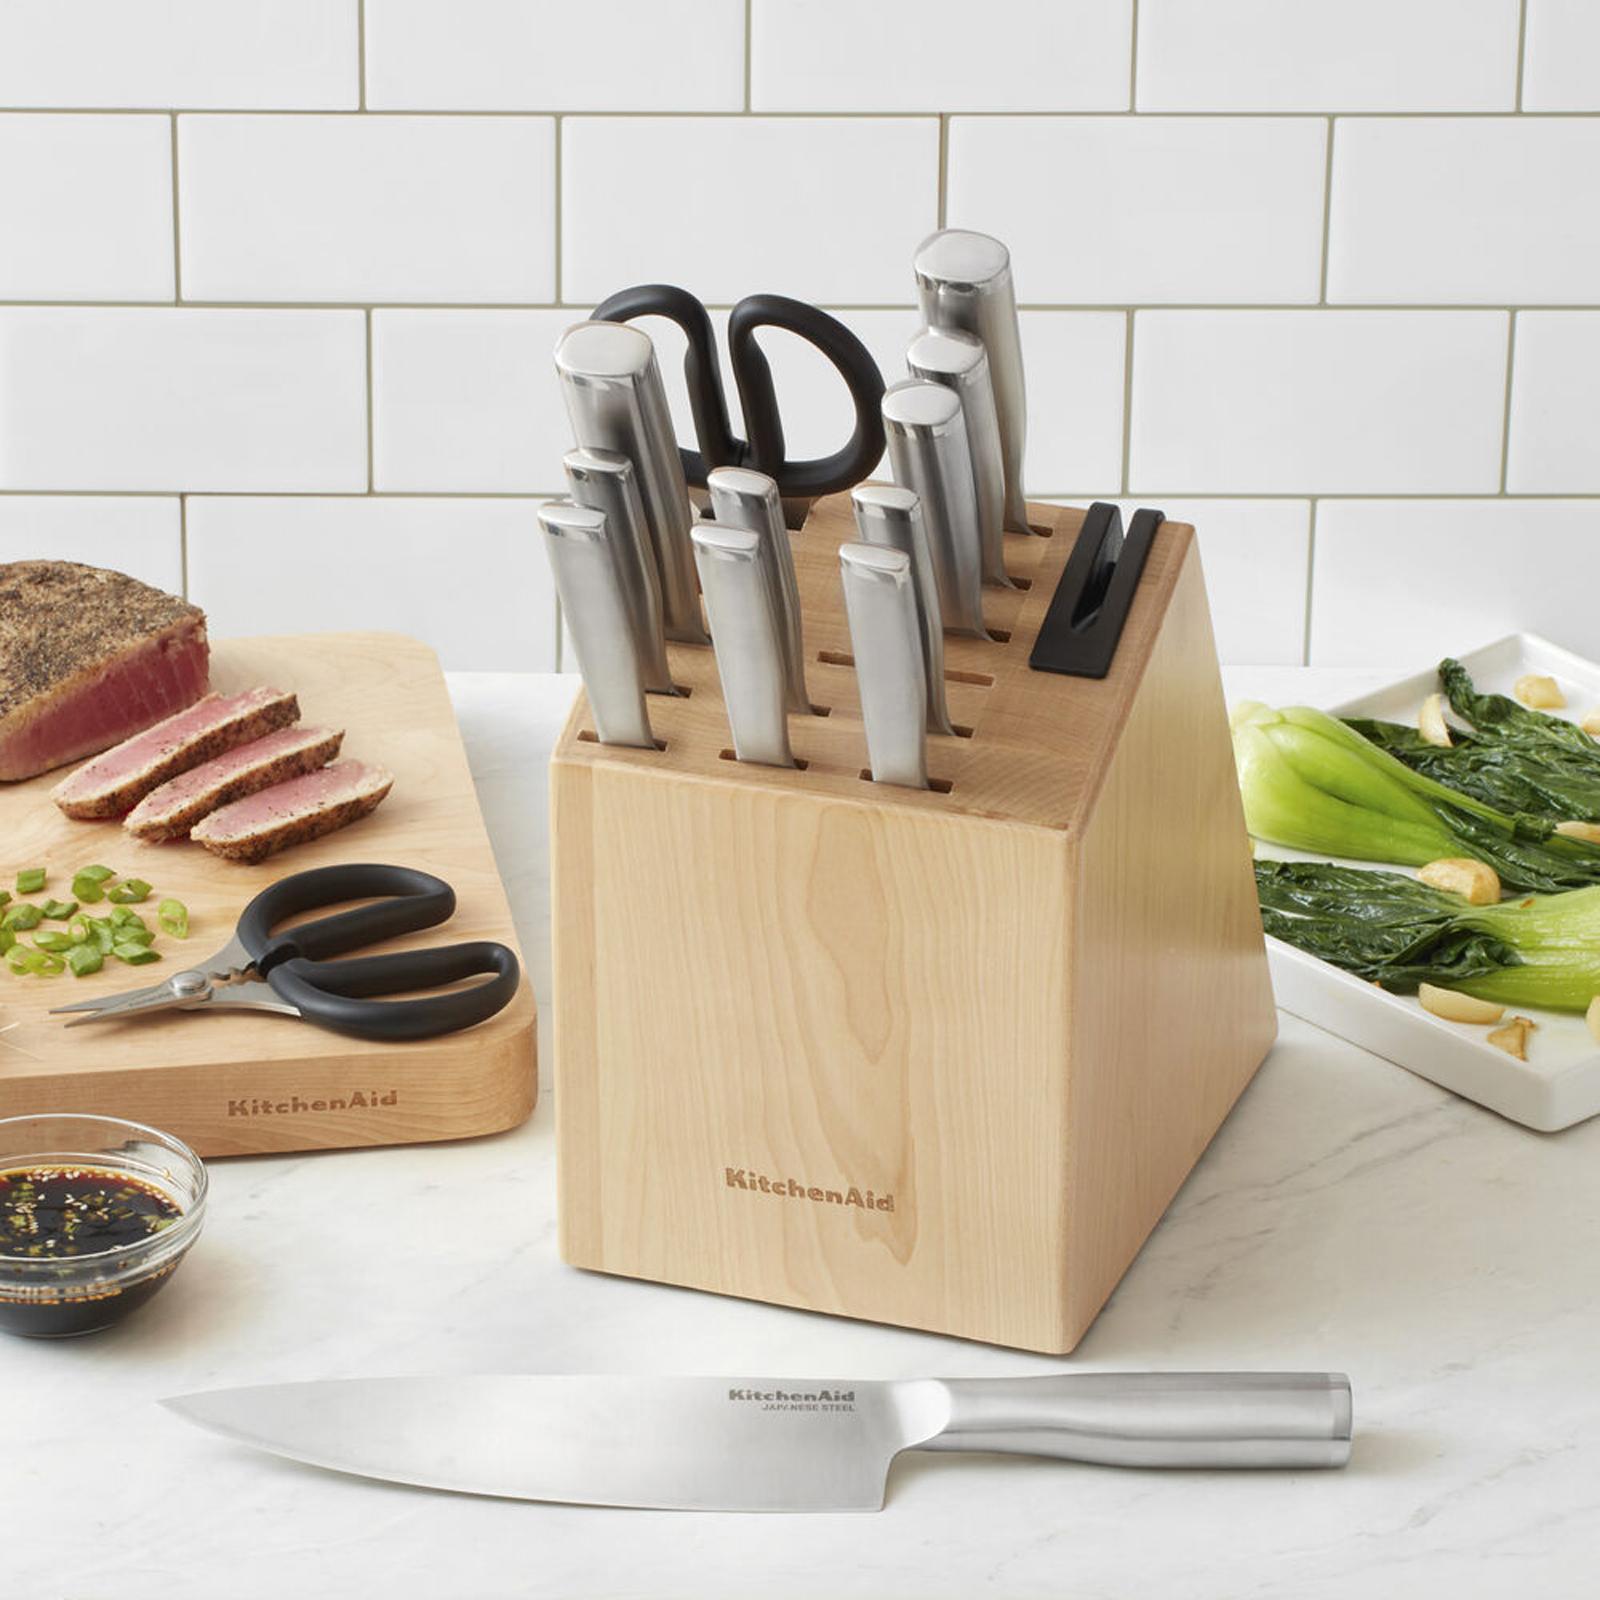 KitchenAid Cutlery set at